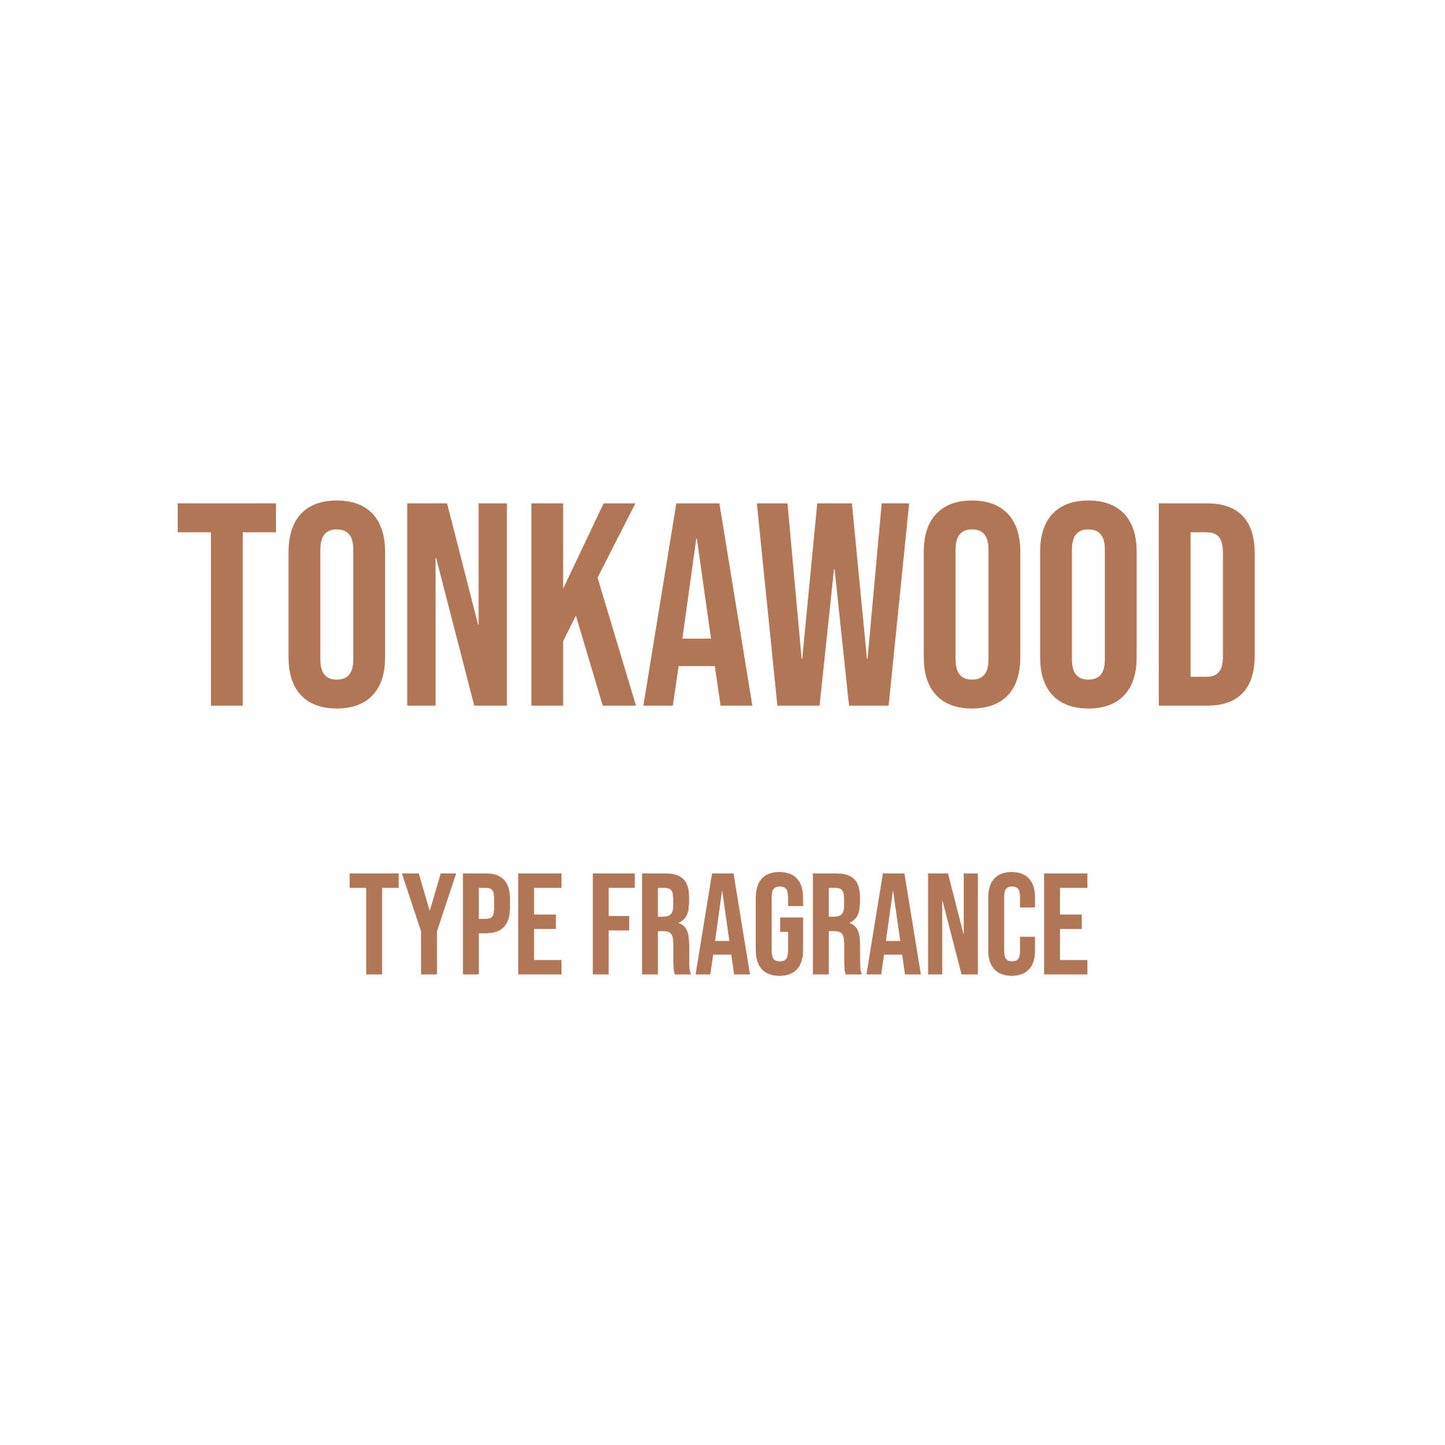 Tonkawood Type Fragrance